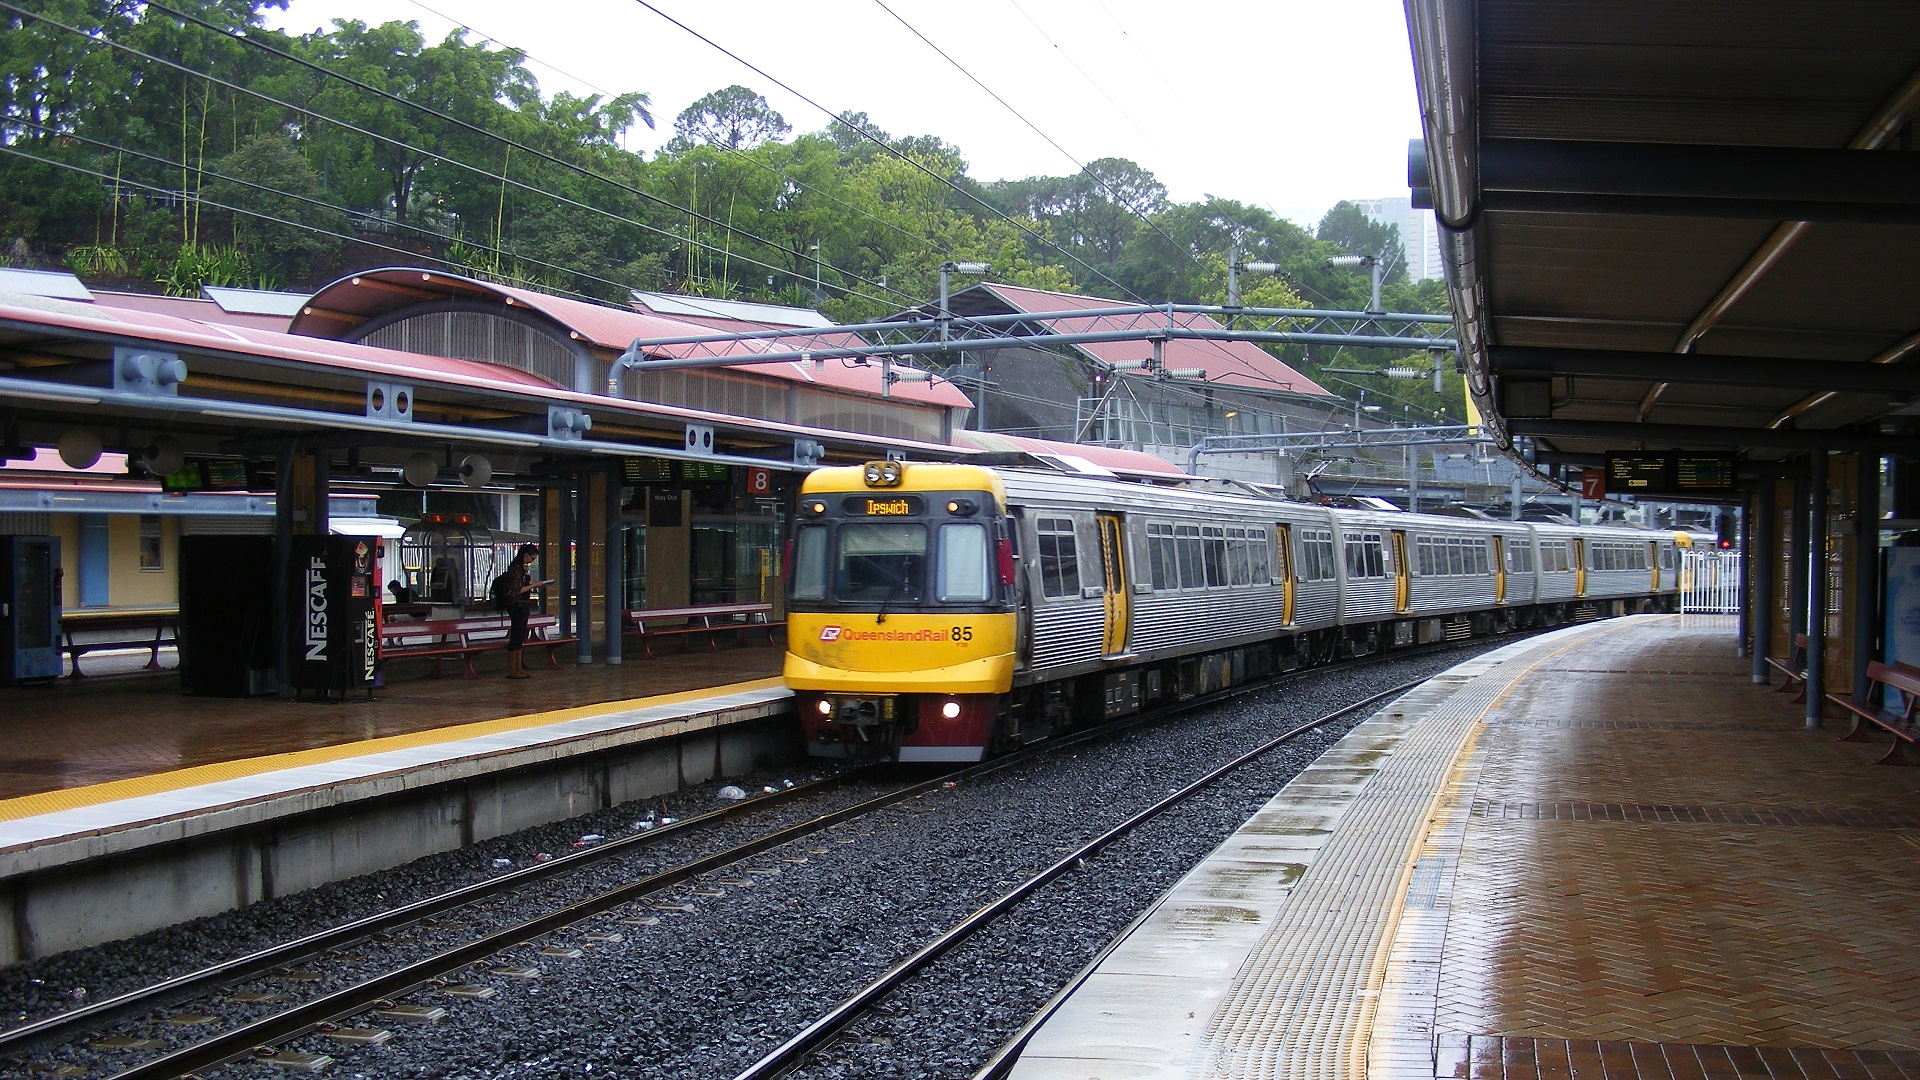 Ipswich Train At a Railway Station in Brisbane Queensland, Australia by lonewolf6738